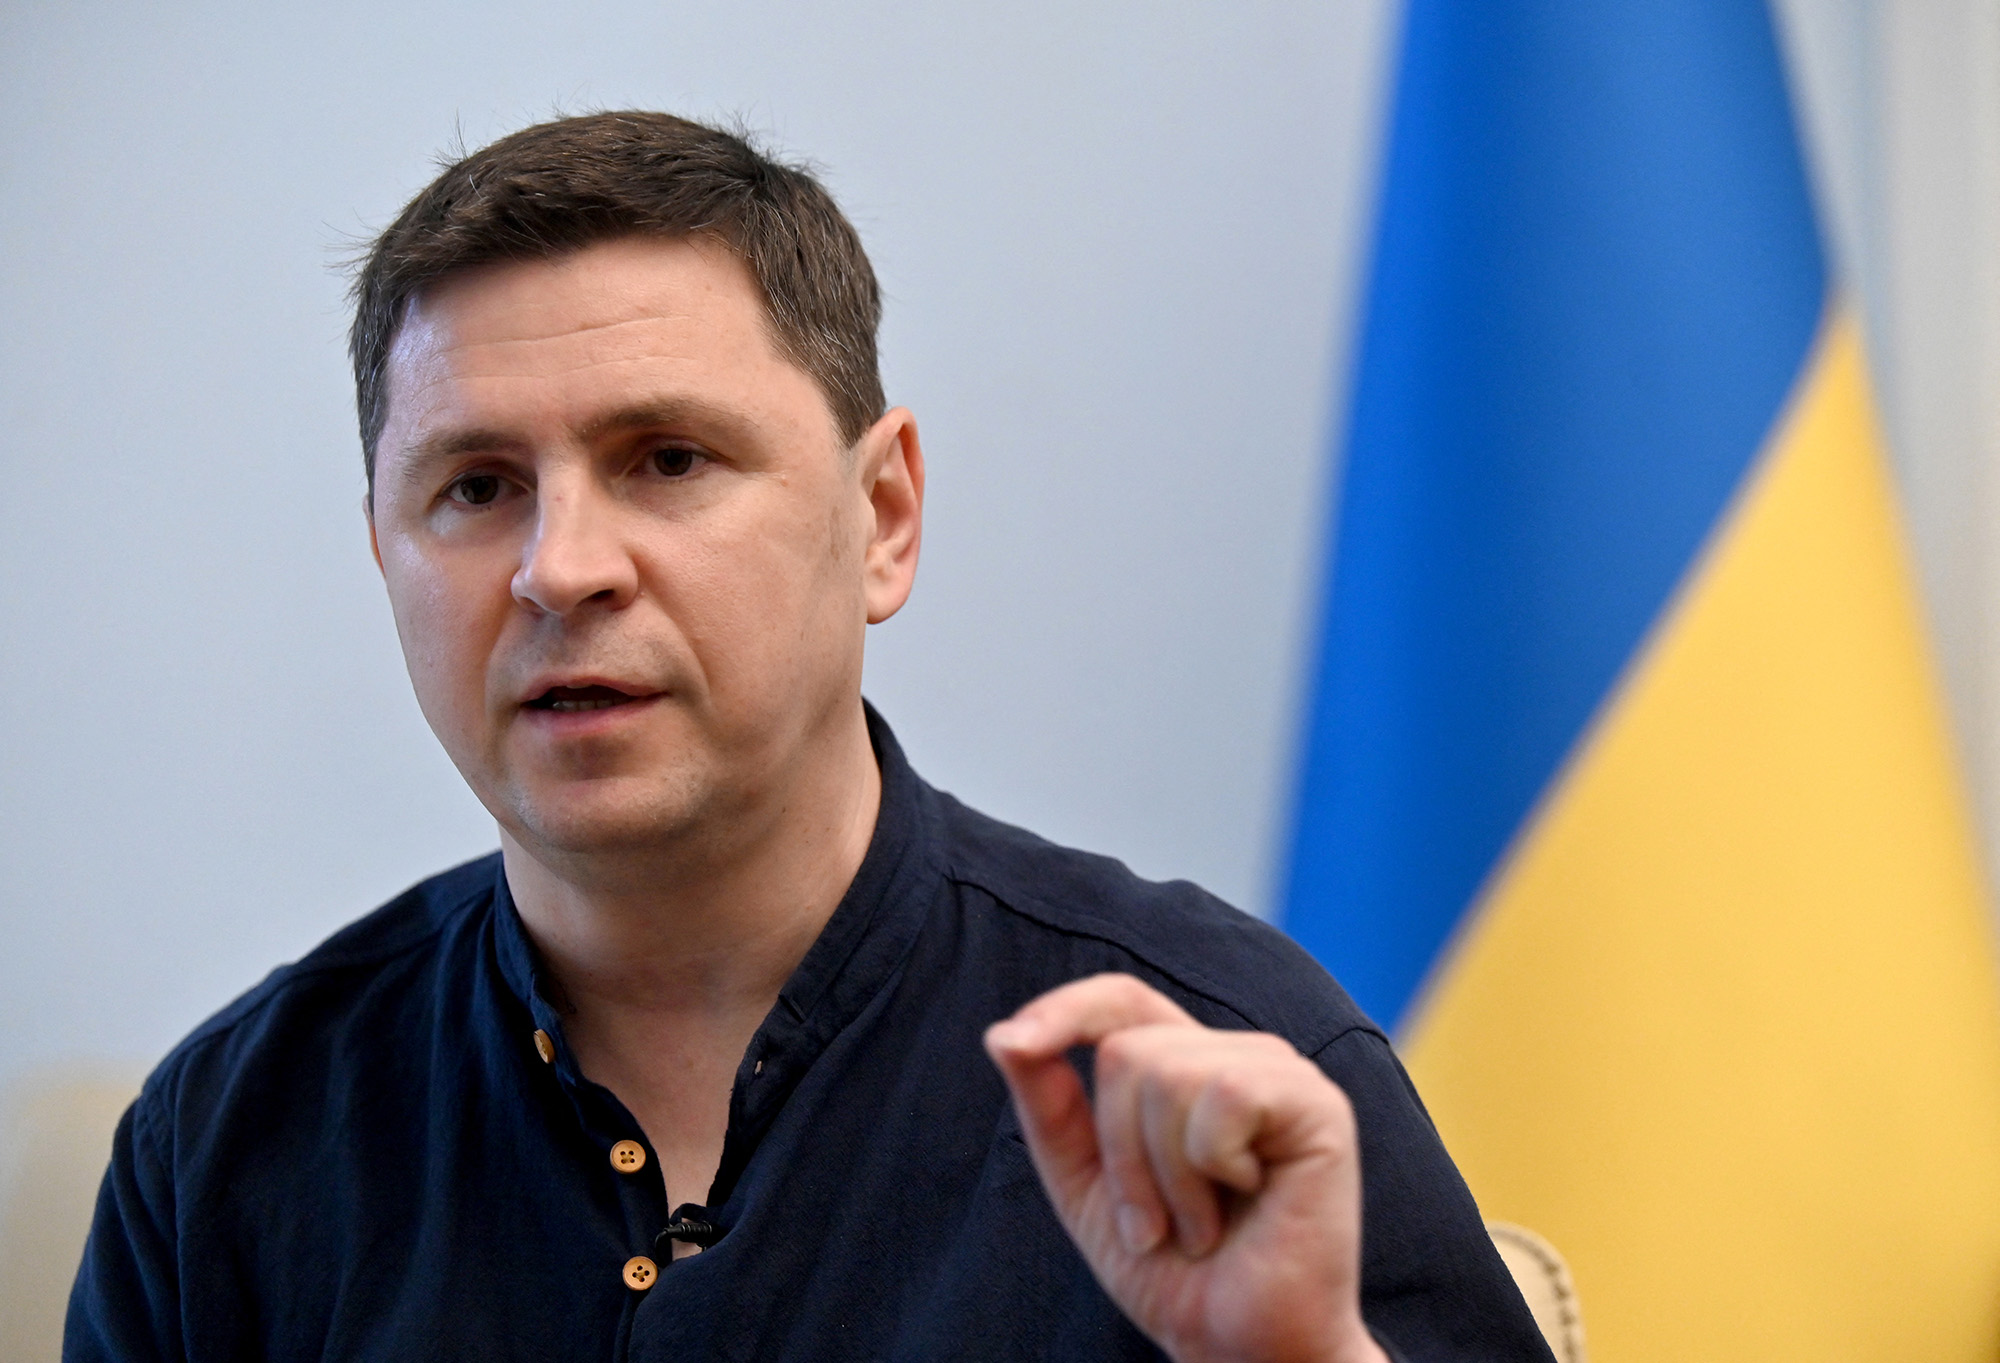 Mykhailo Podolyak, adviser to the President of Ukraine Volodymyr Zelensky, speaks during an interview in Kyiv, Ukraine, on July 19.